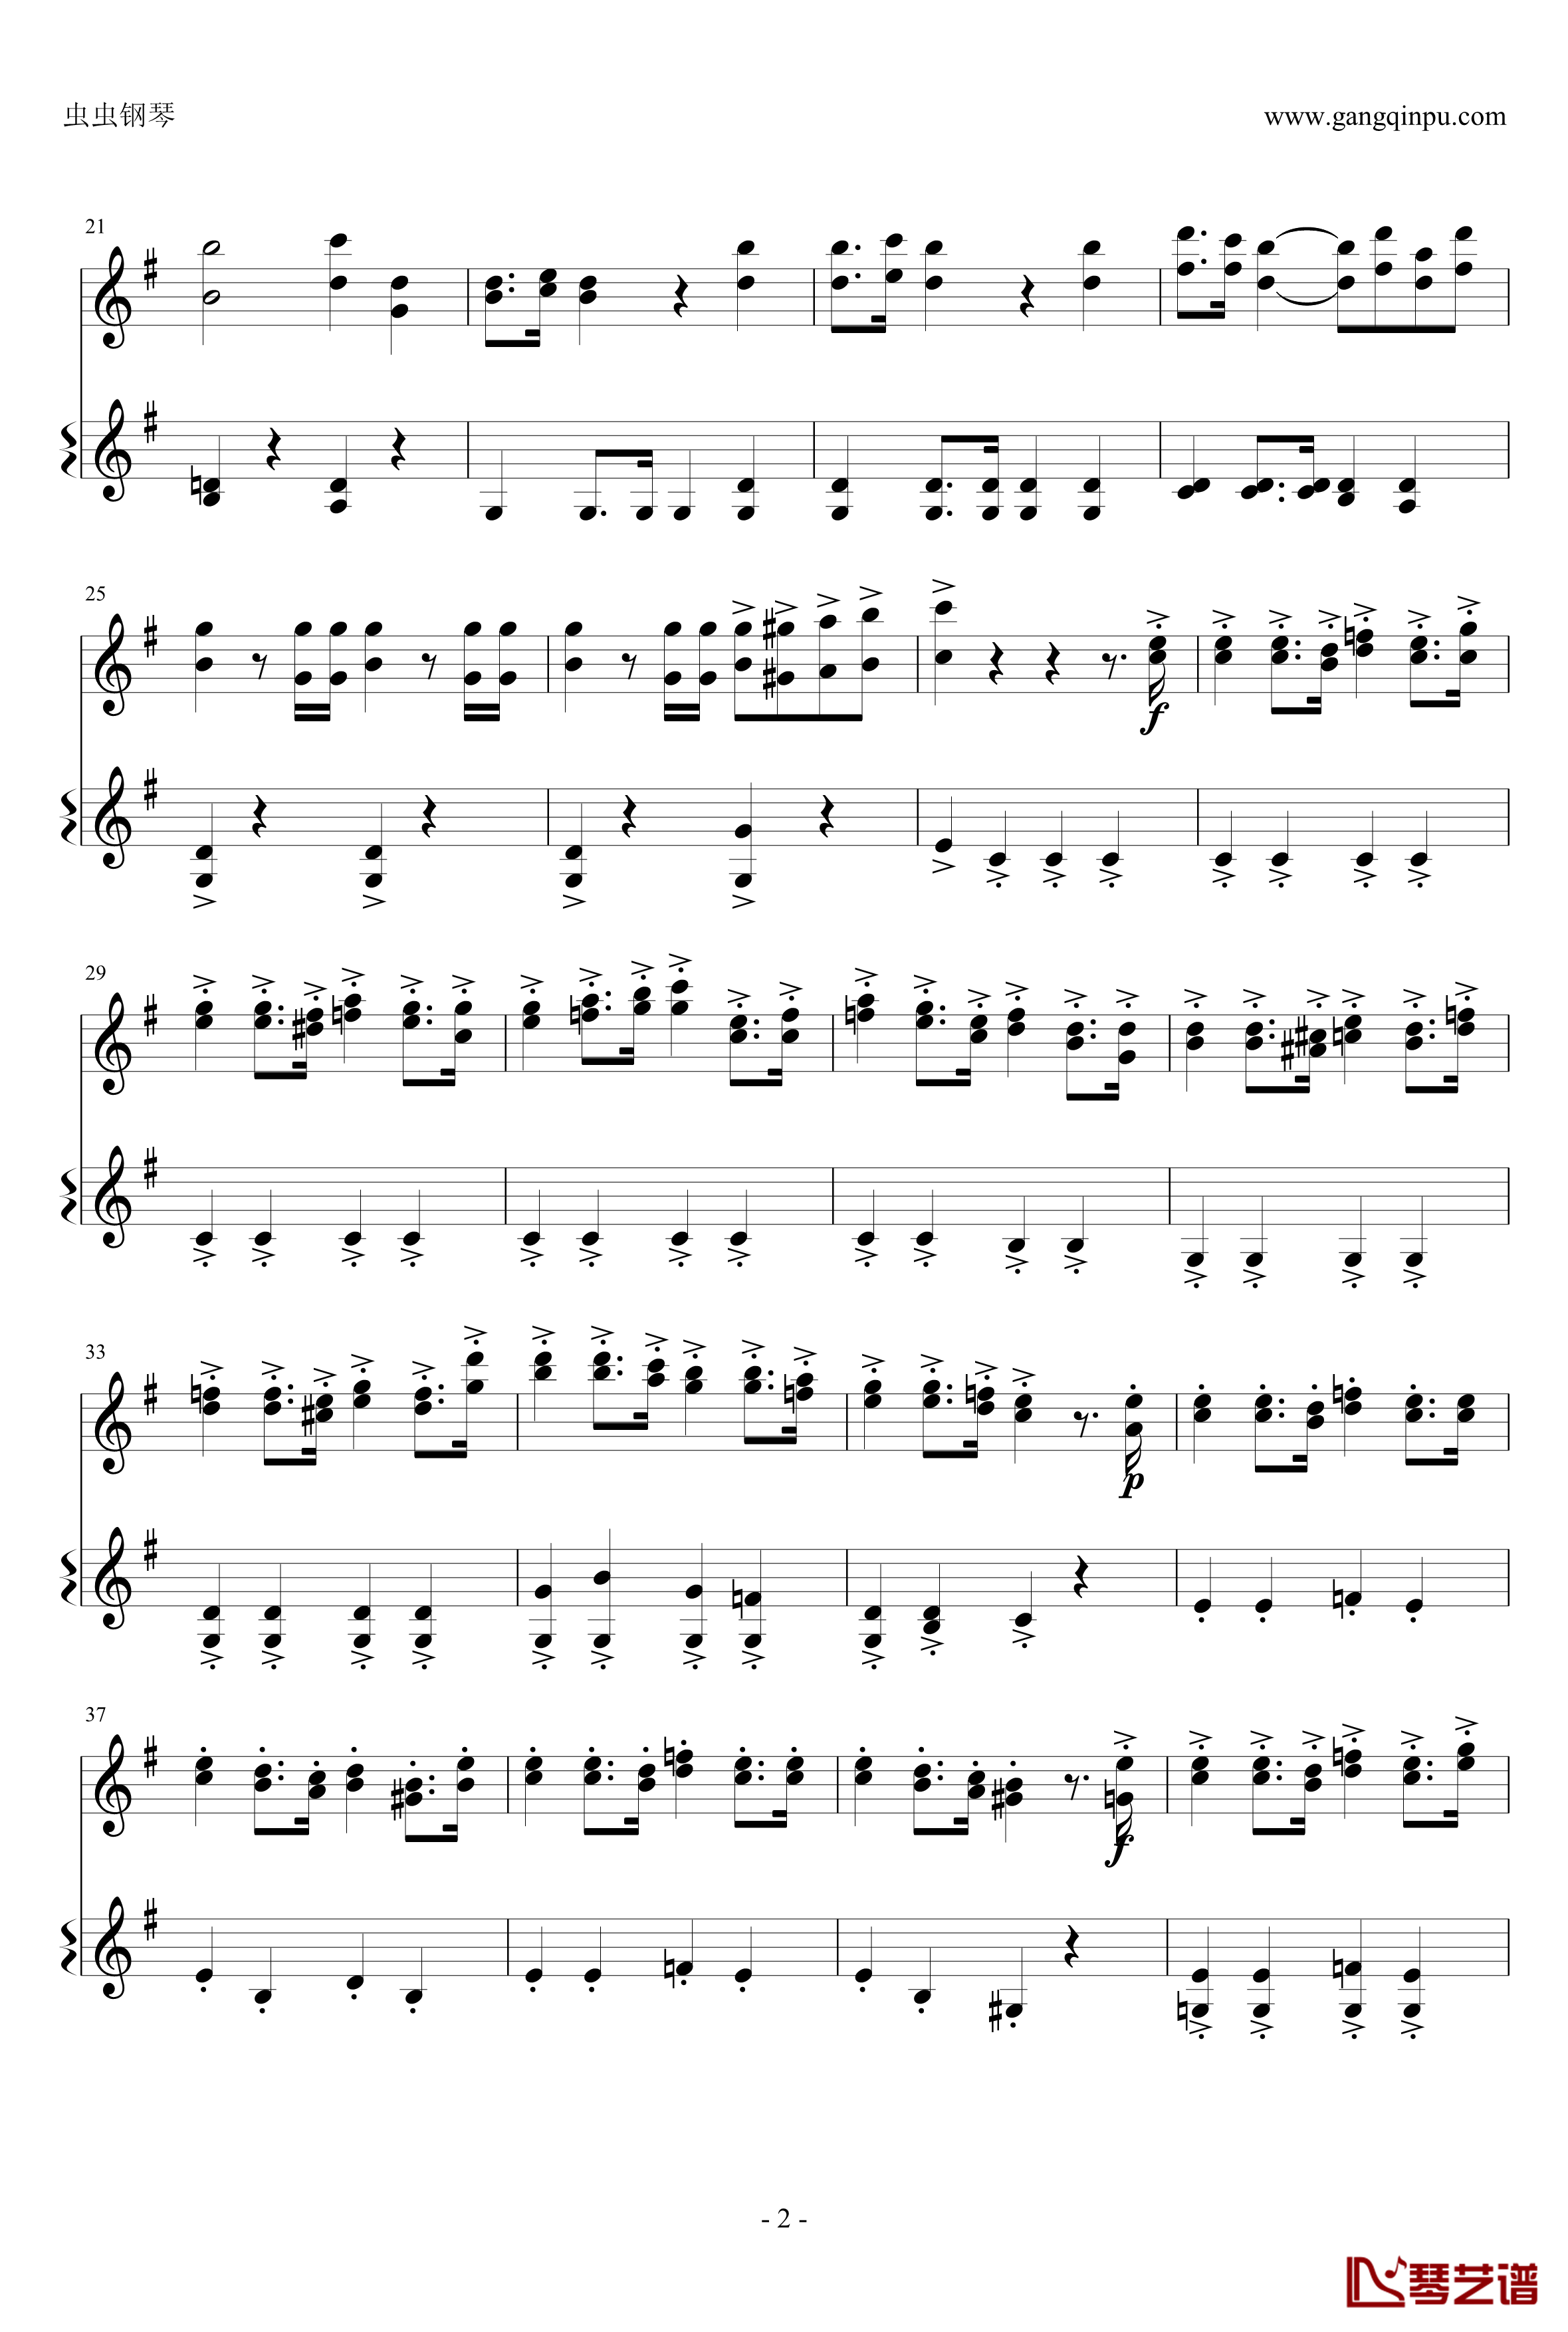 意大利国歌钢琴谱-变奏曲修改版-DXF2